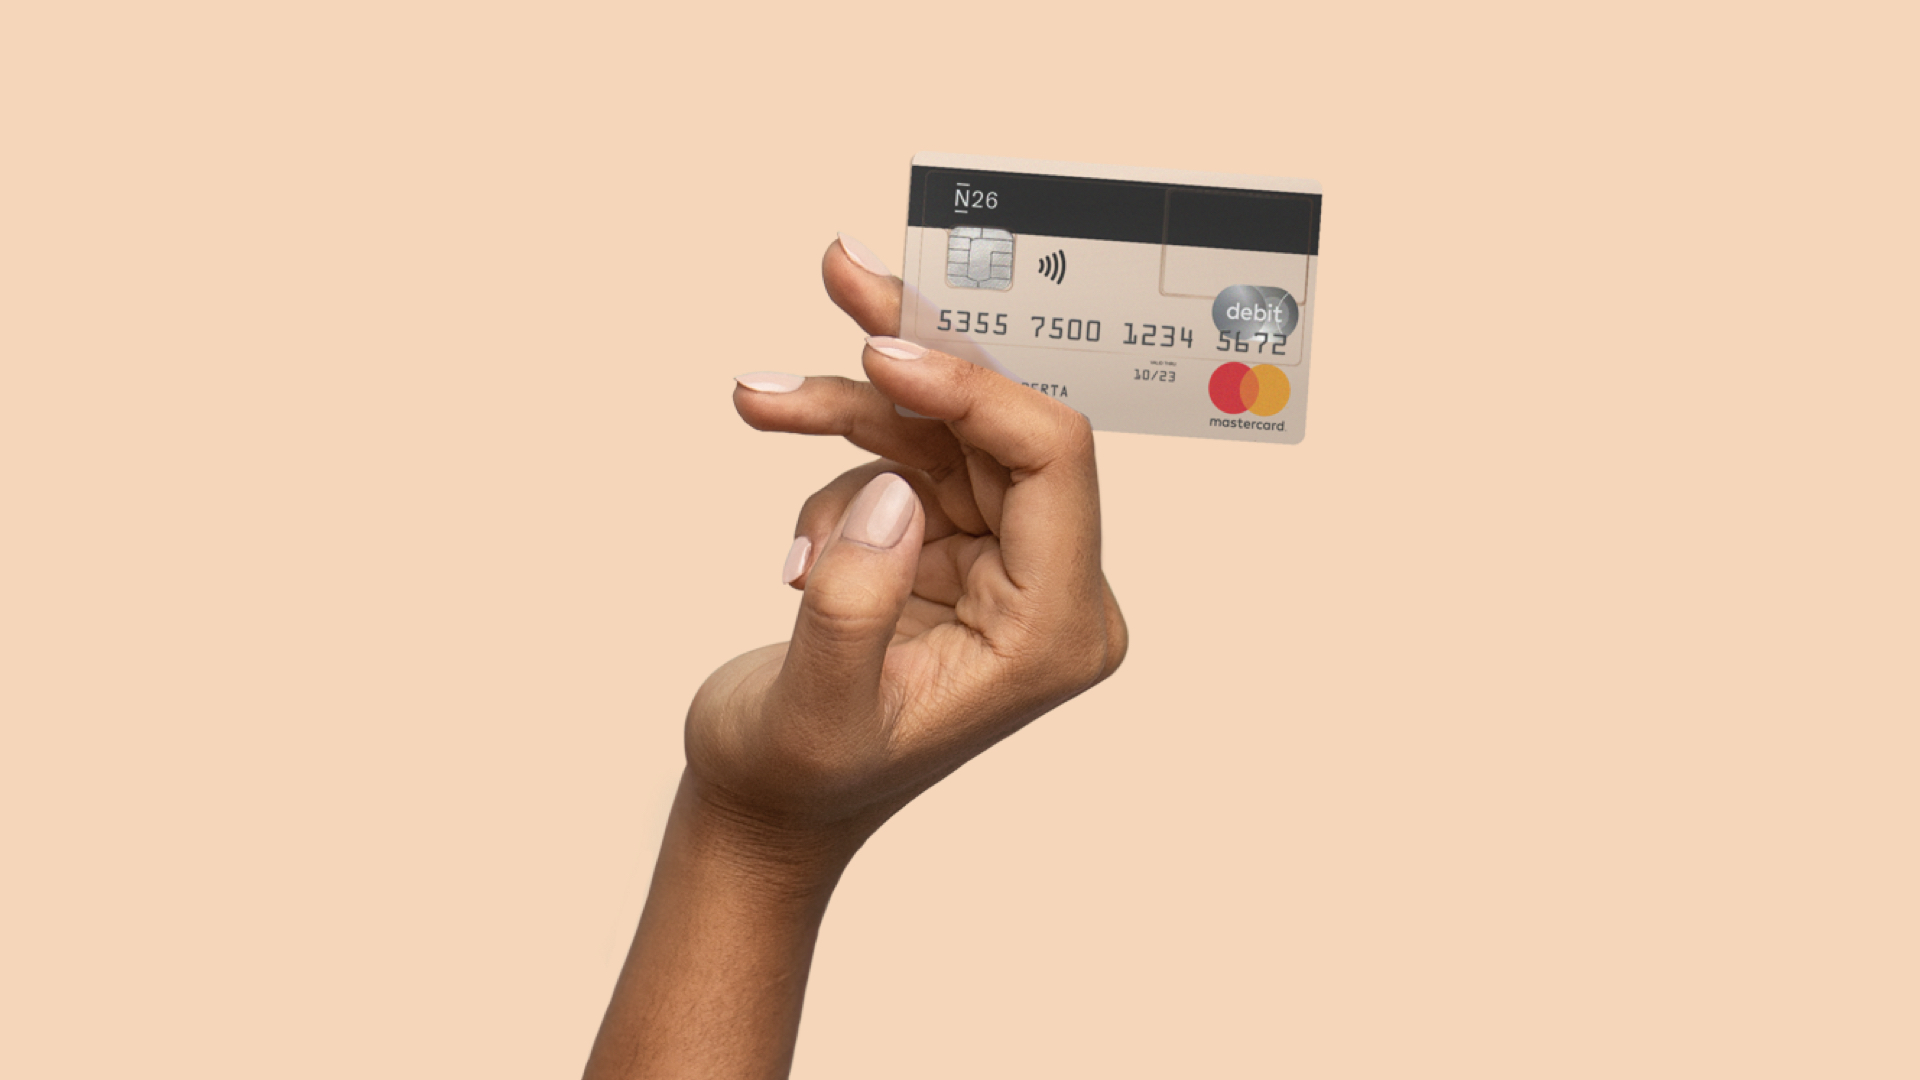 N26 - Prensa - Imagen de nuestra campaña “26 razones” con una mano sosteniendo una tarjeta de débito Mastercard de una cuenta bancaria gratuita